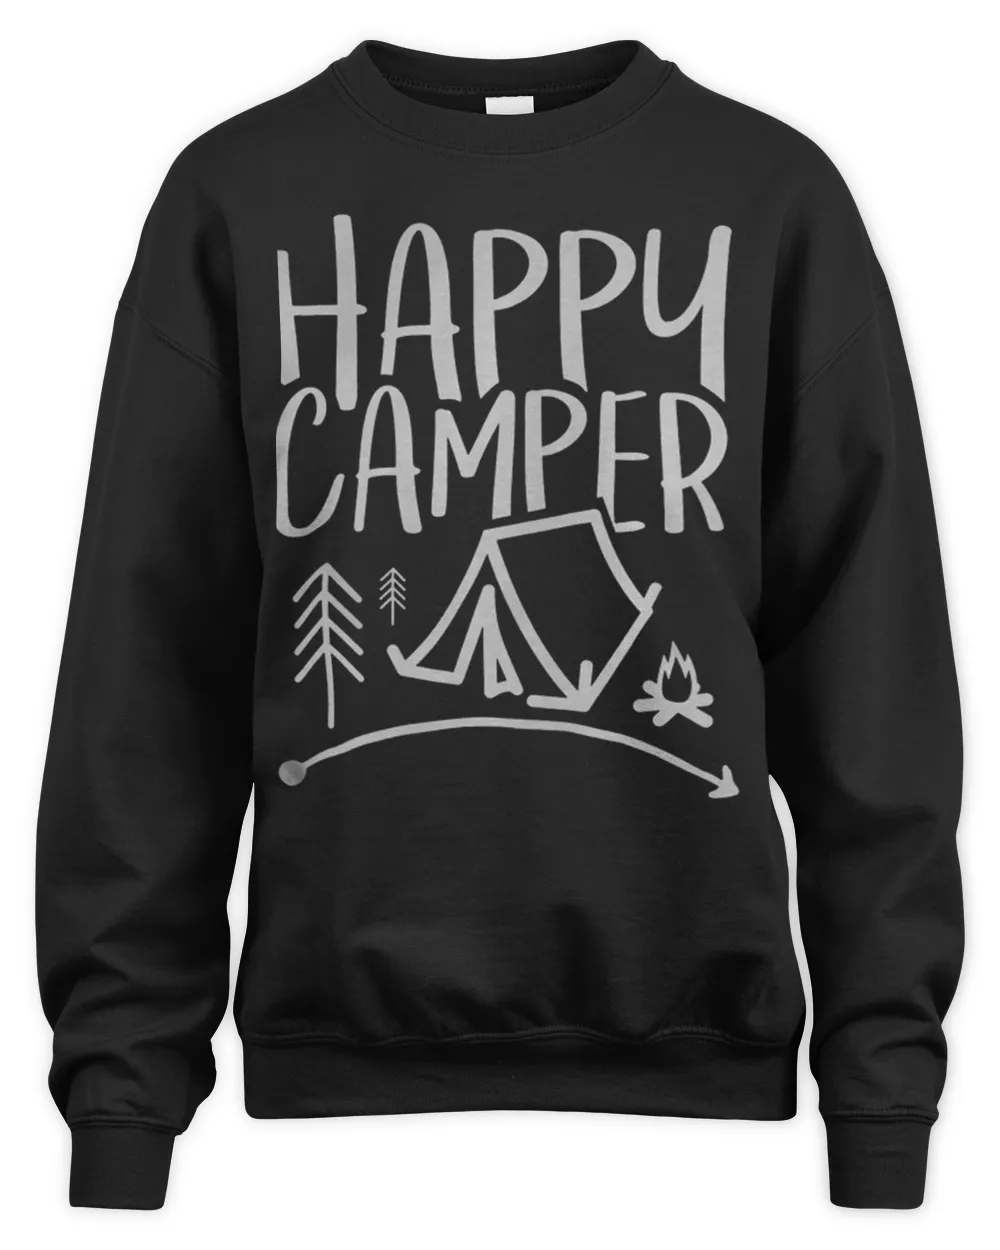 Happy camper